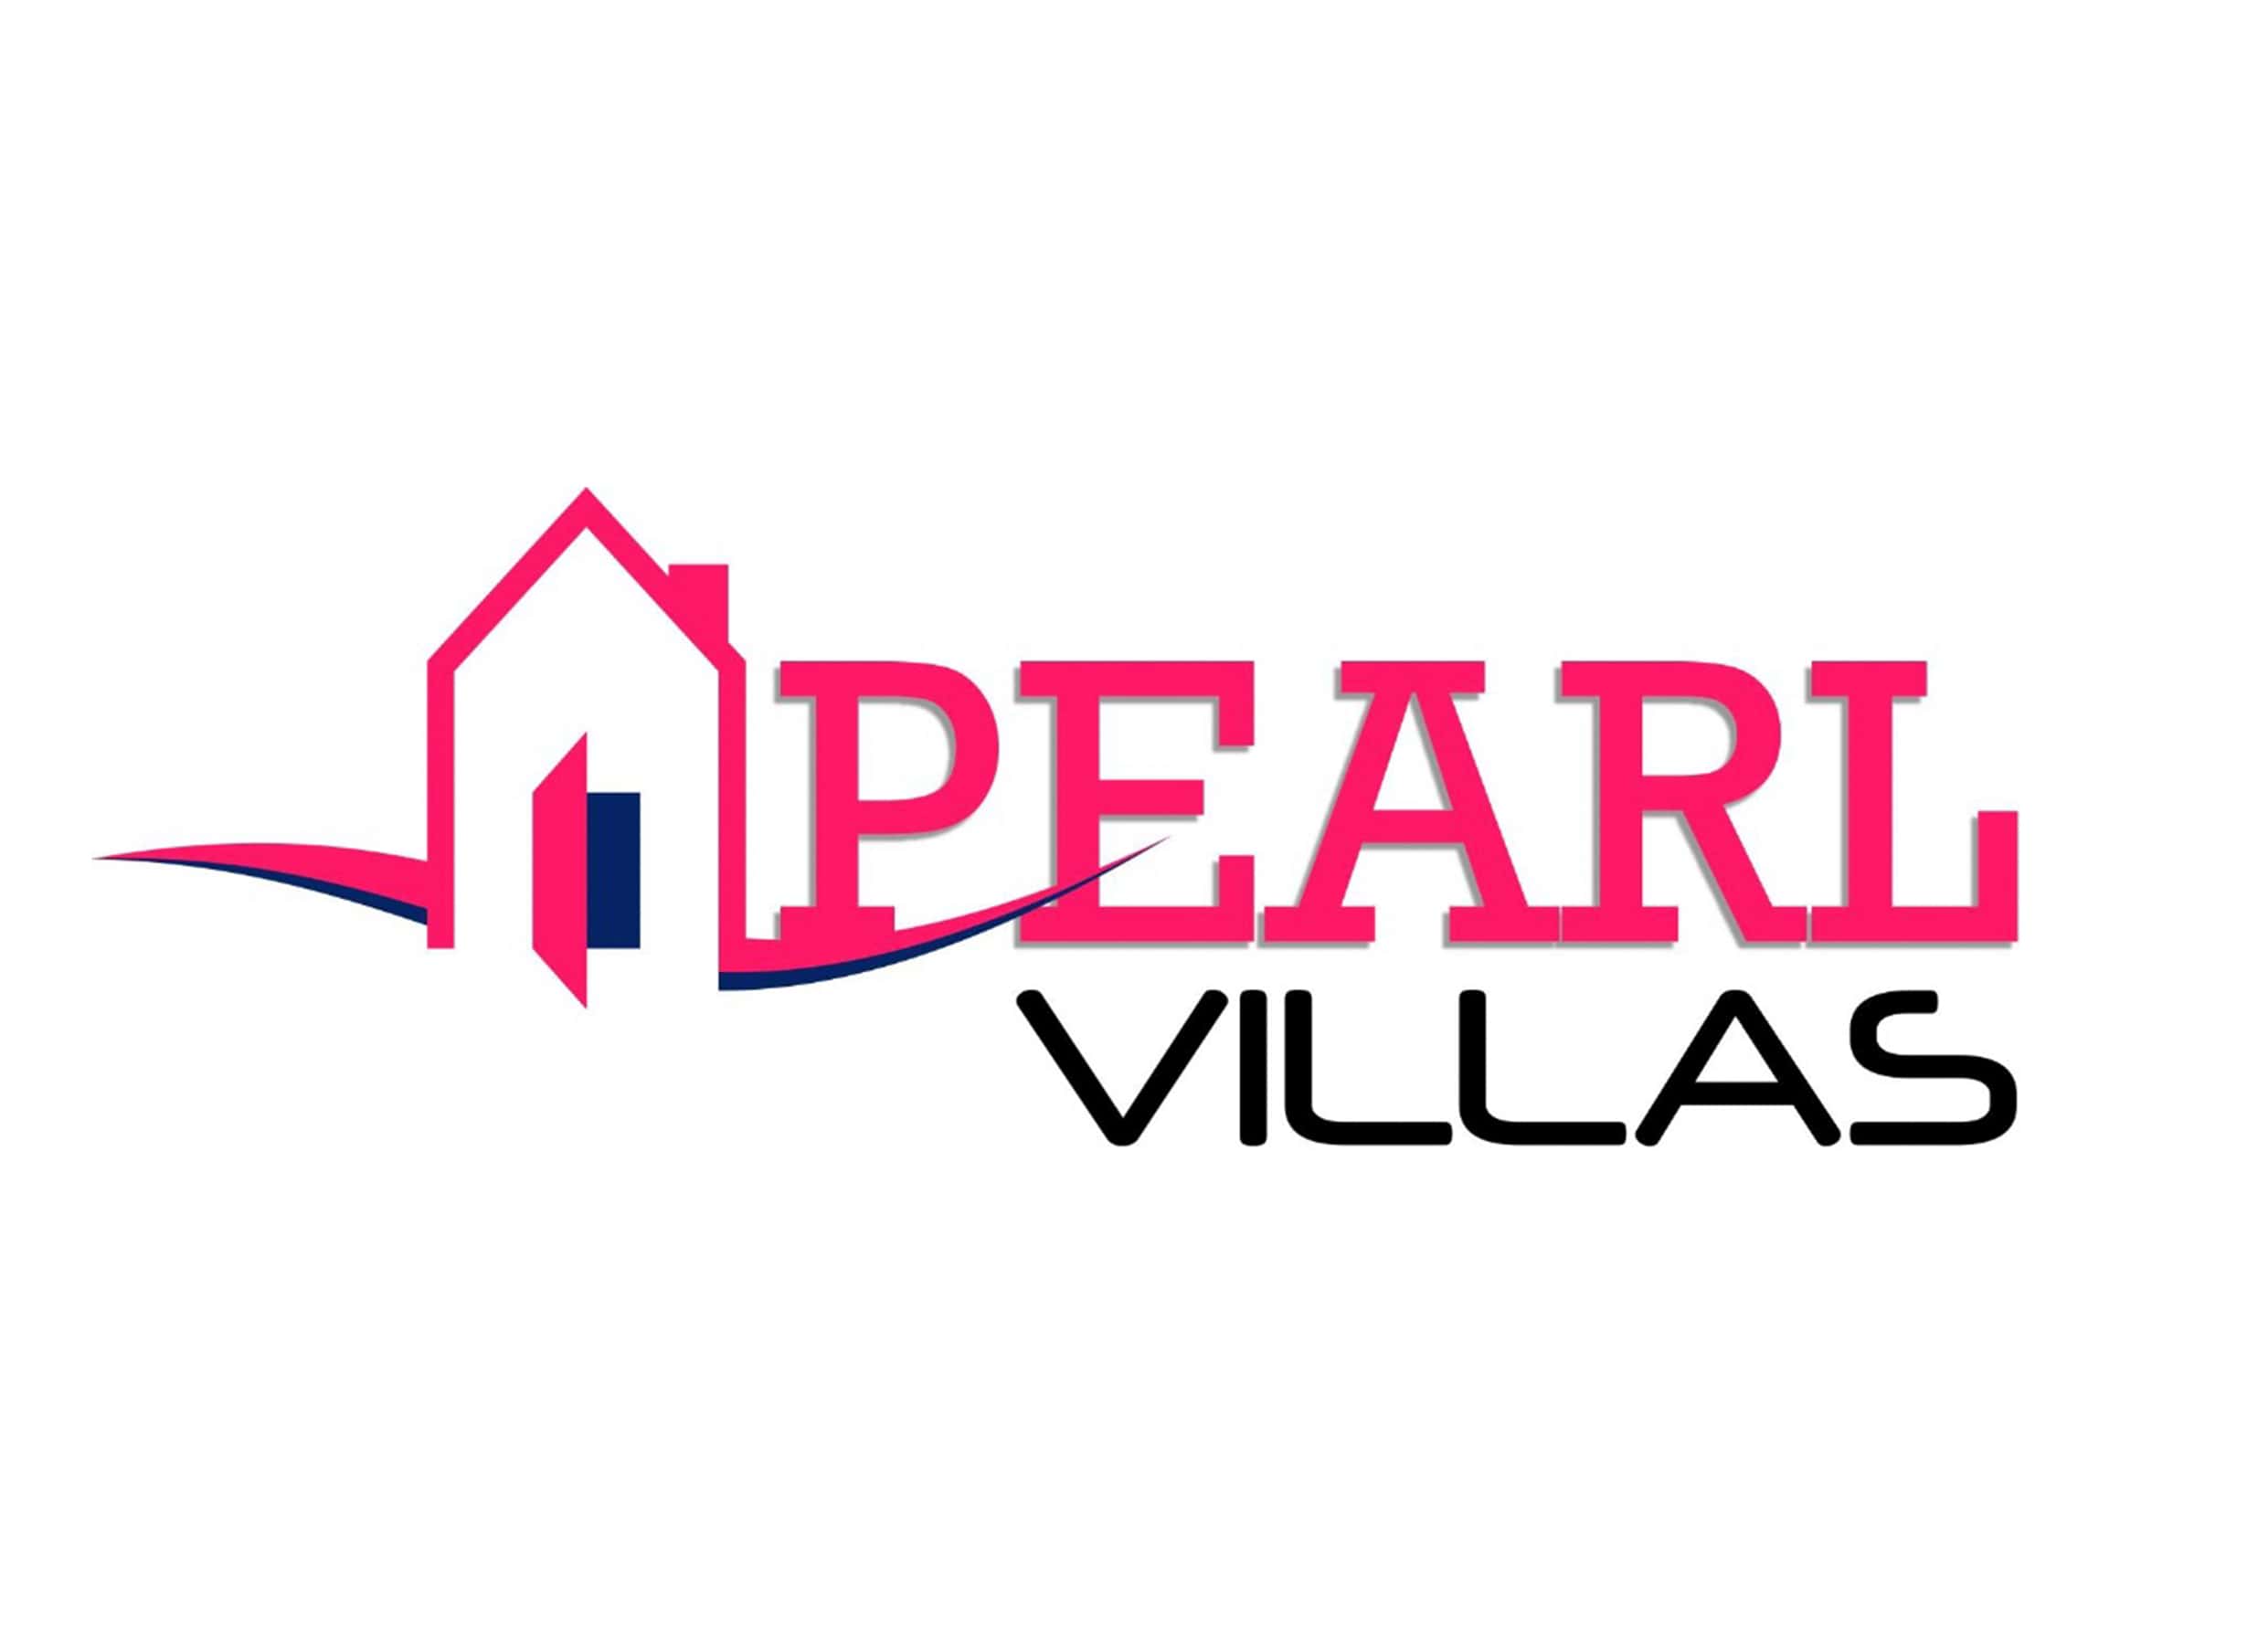 pearl villas